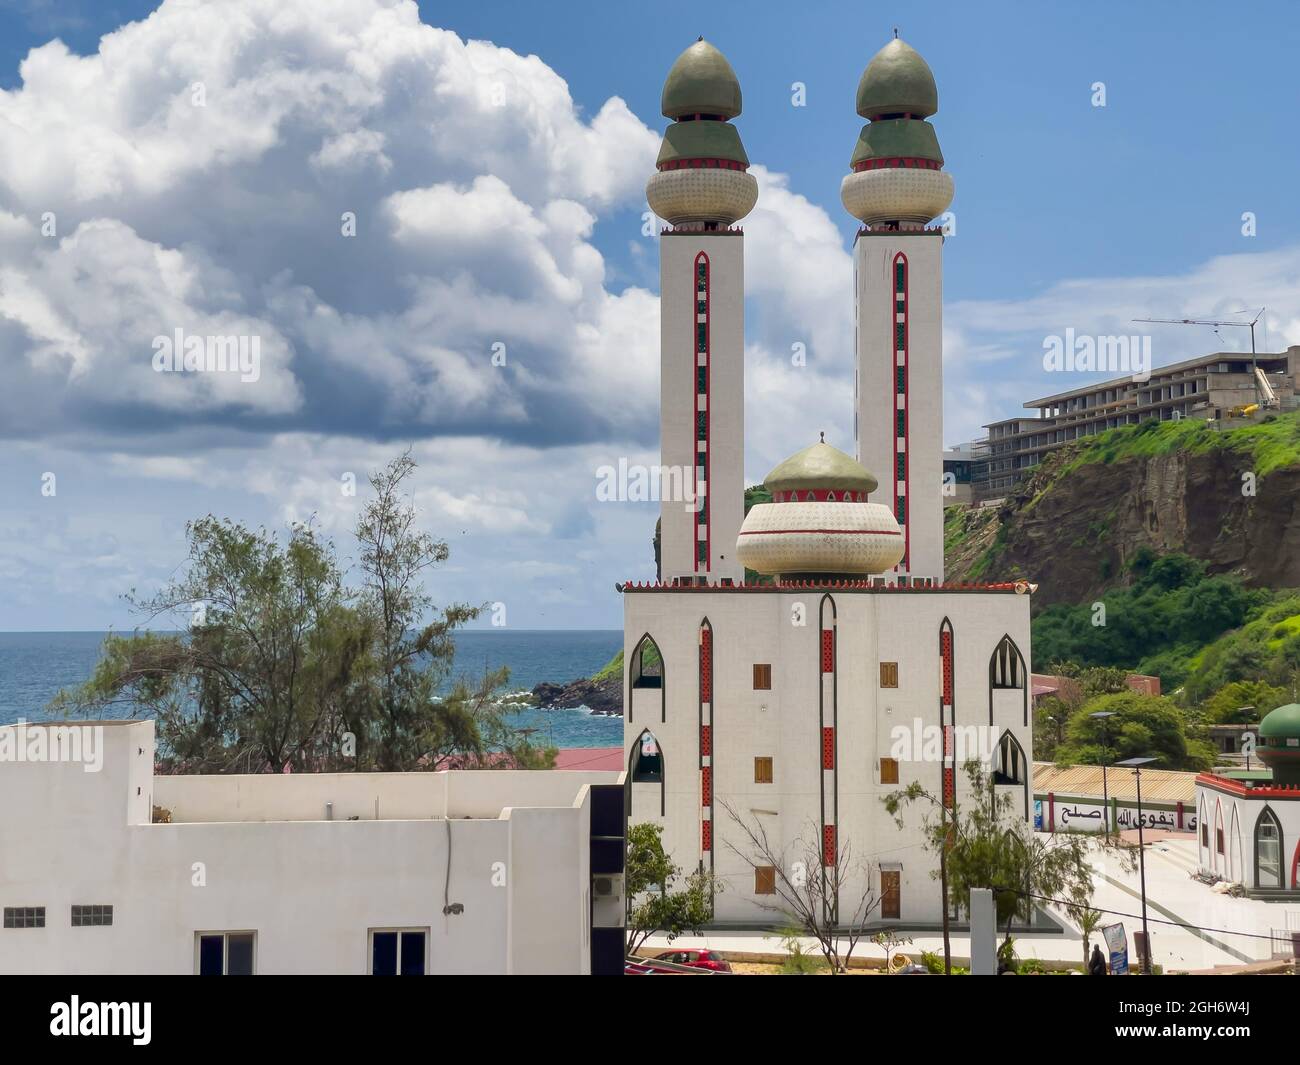 La mosquée de divinité, 'la divinité' en français, Dakar, Sénégal Banque D'Images